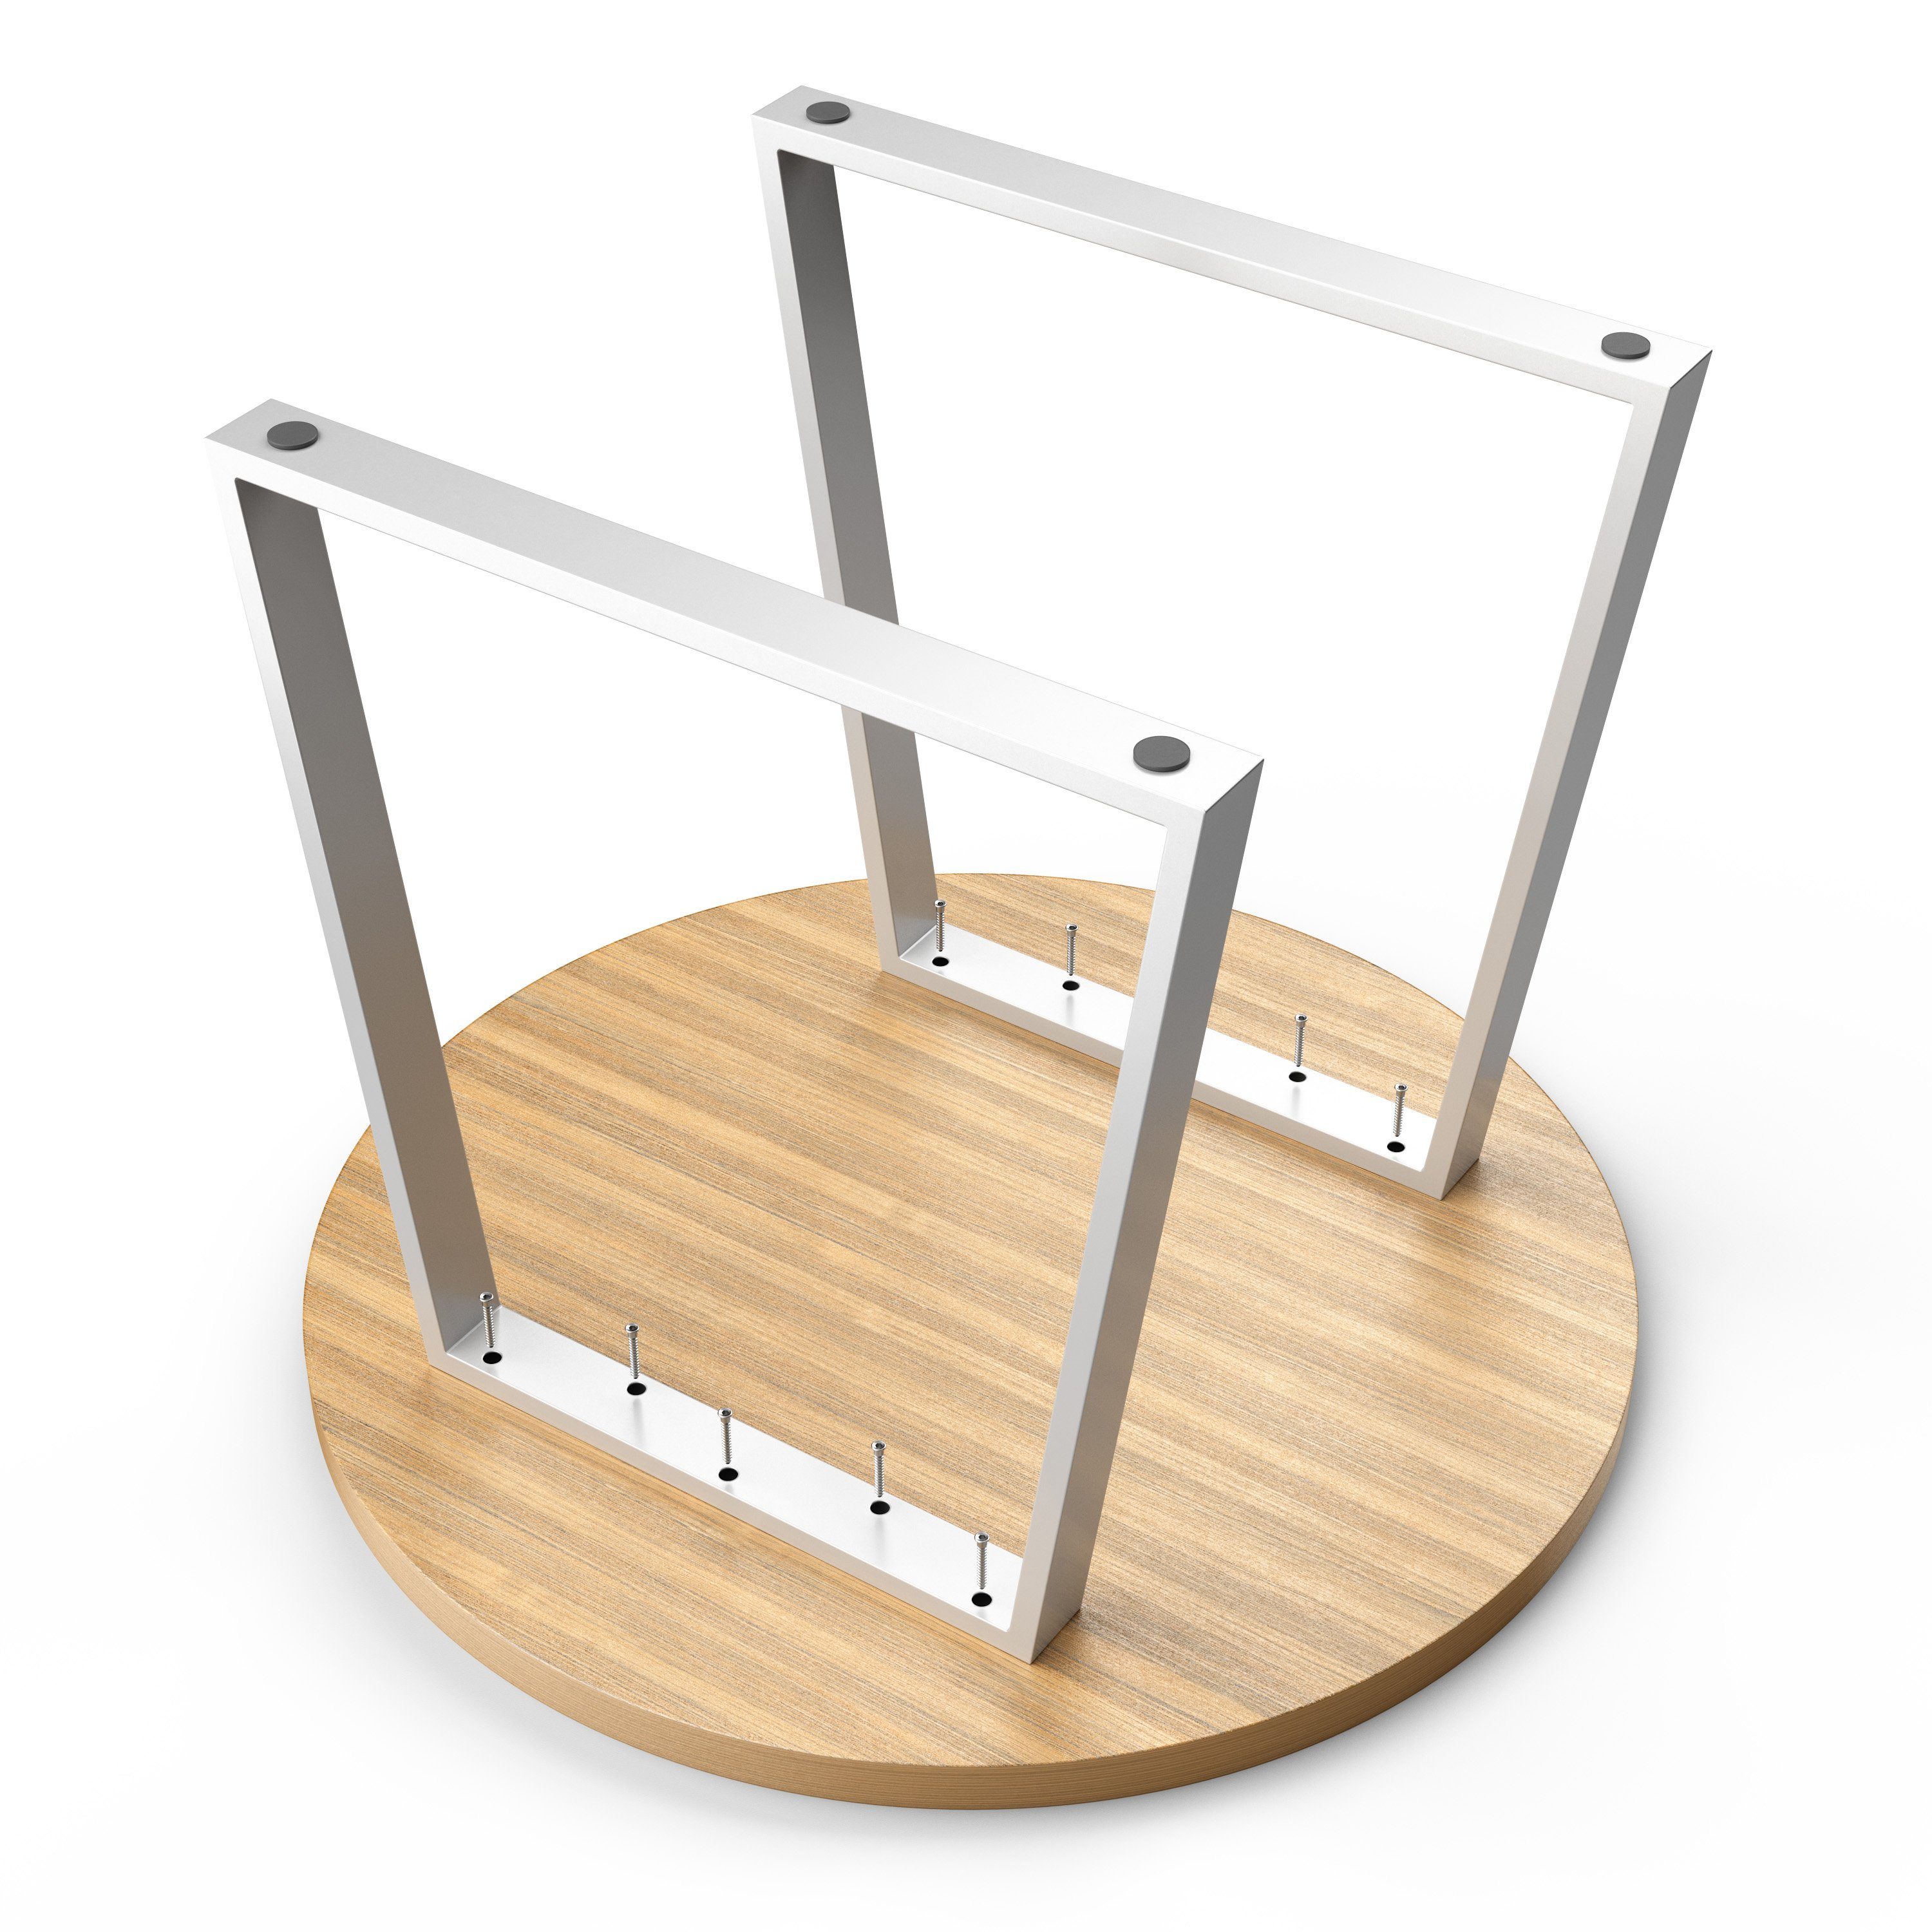 sossai® Tischgestell Stahl Trapez in Tischkufen Rahmen: 70cm 60mm Breit (2-St), x Weiß 50cm